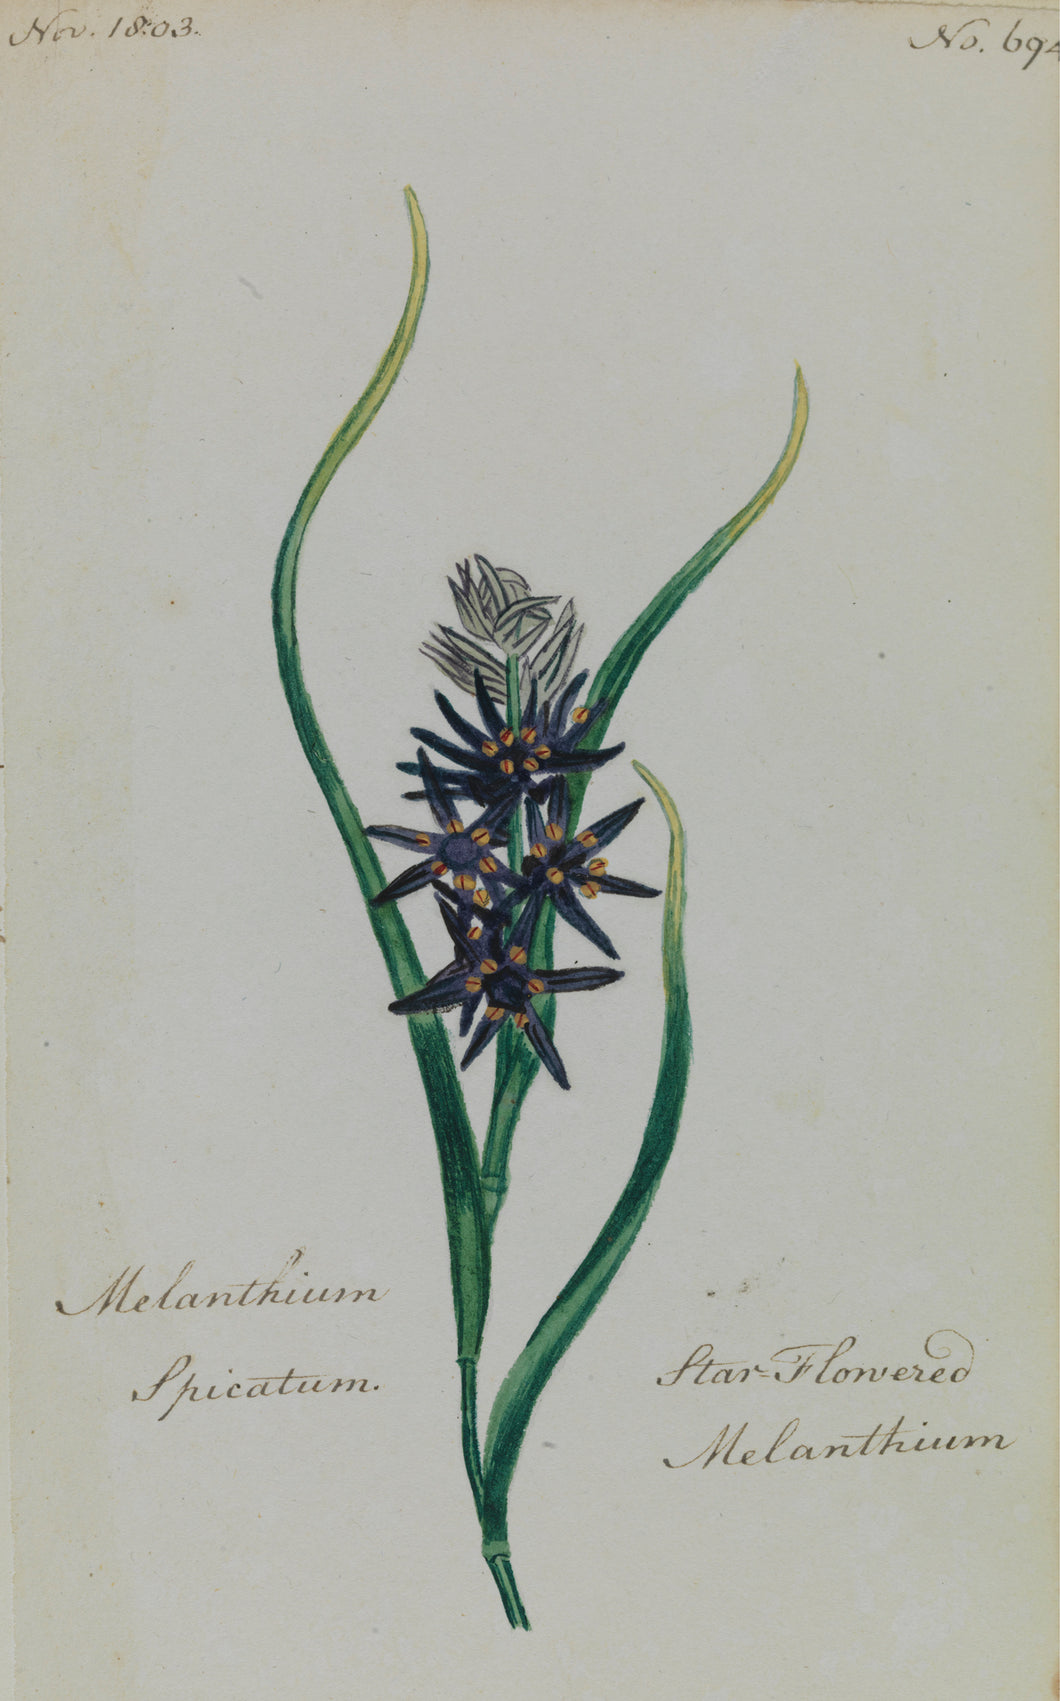 Star-flowered Melanthium